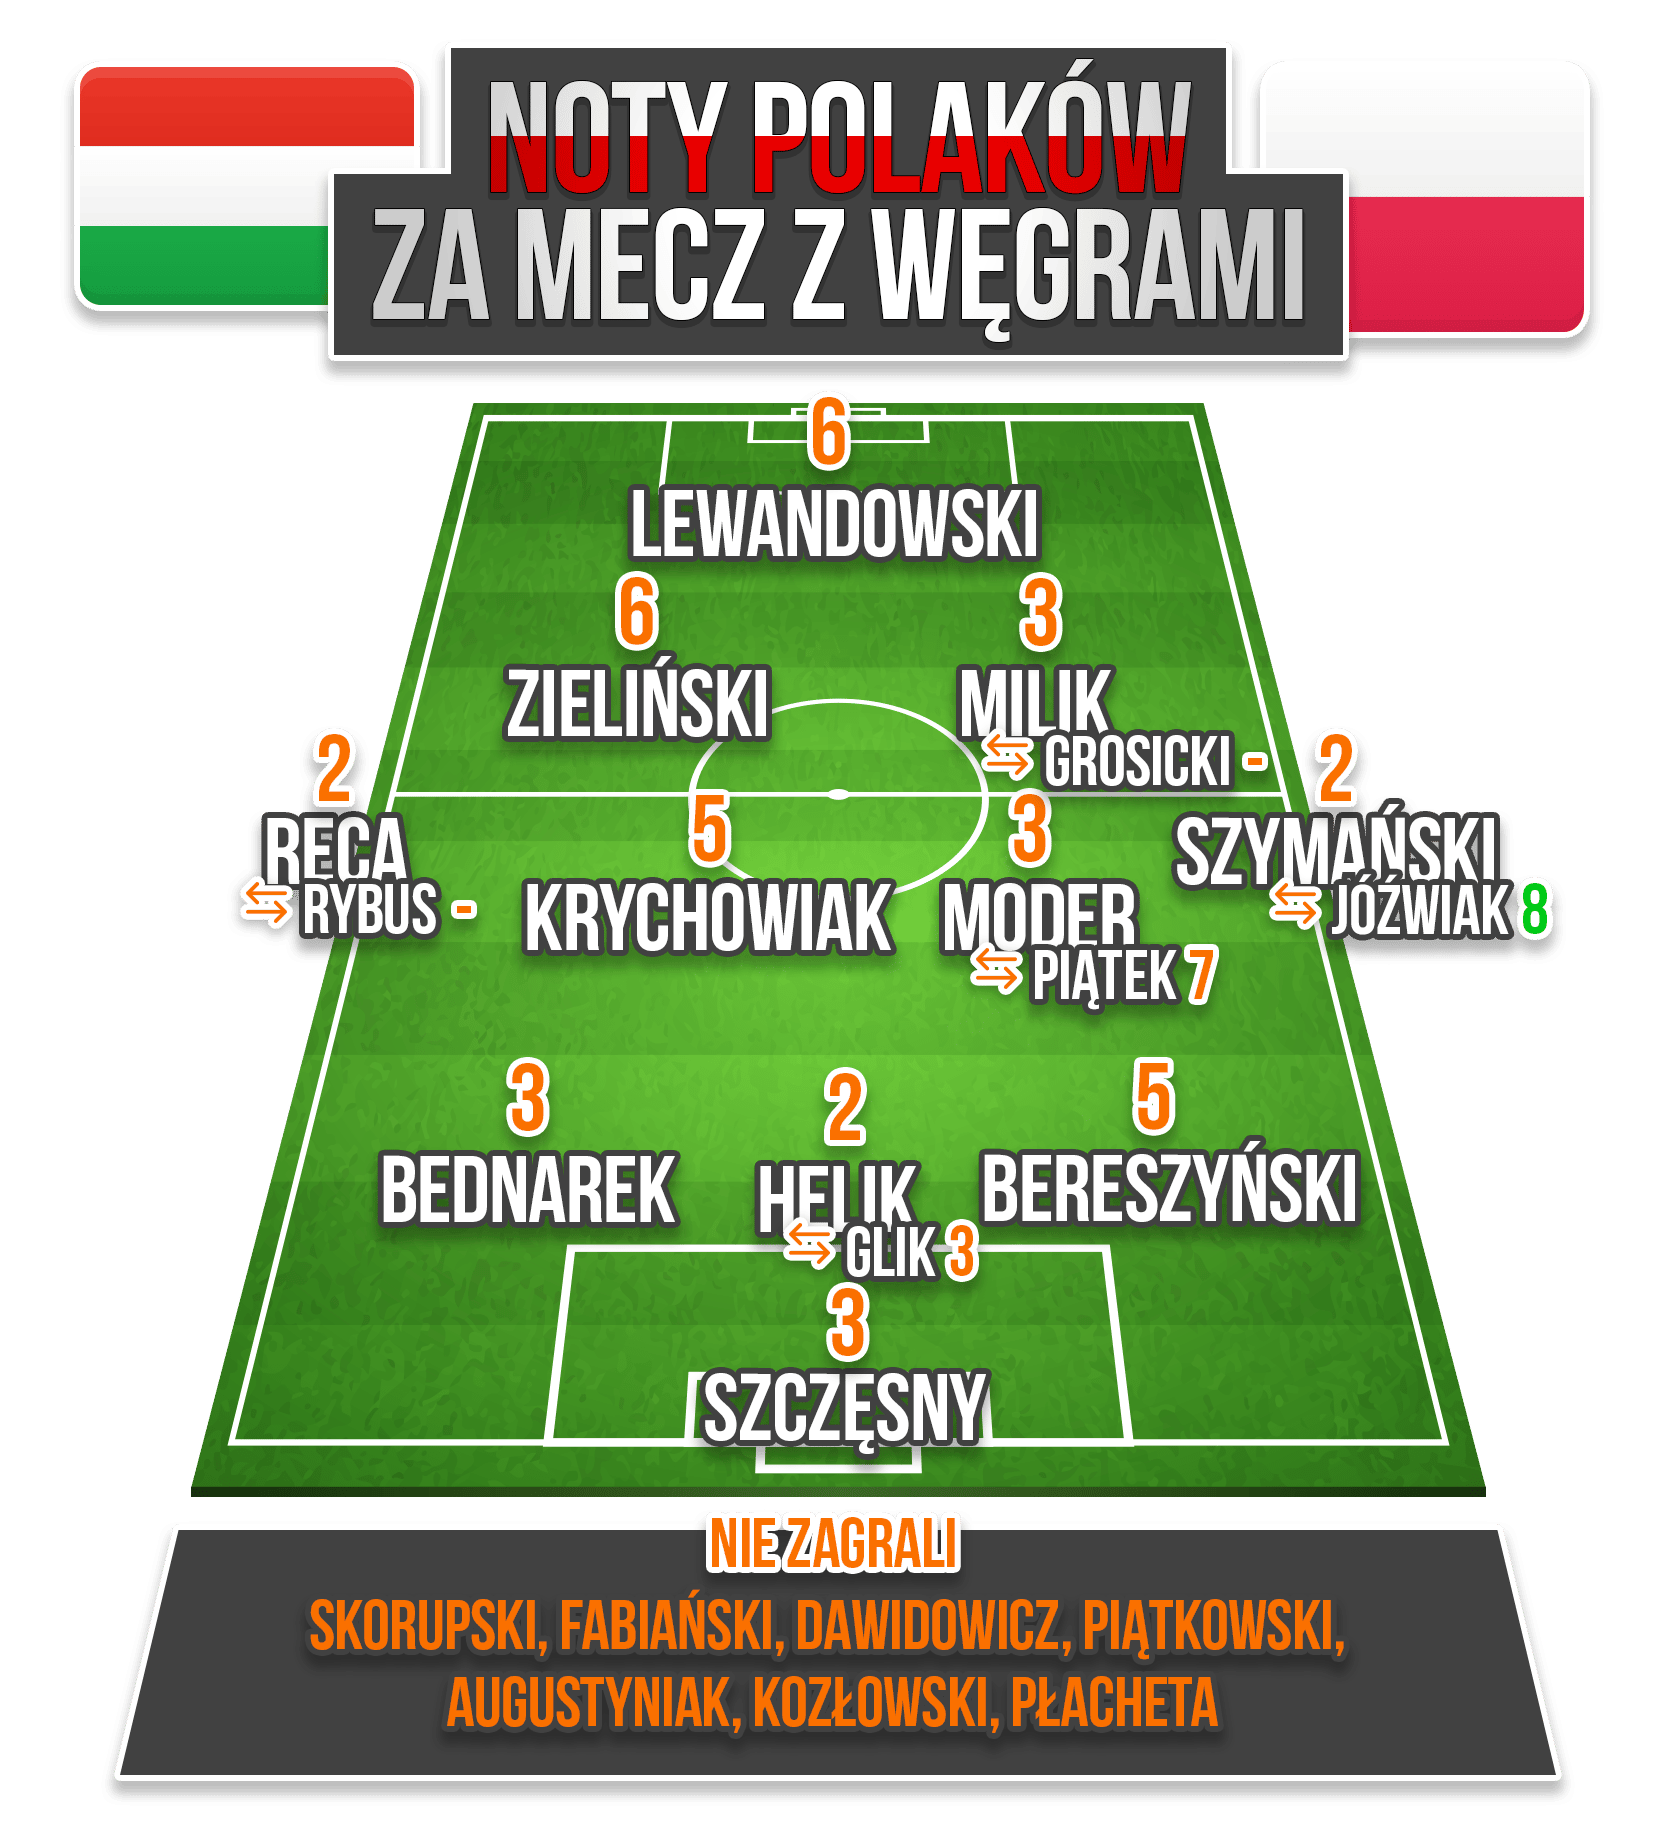 Węgry - Polska - Noty